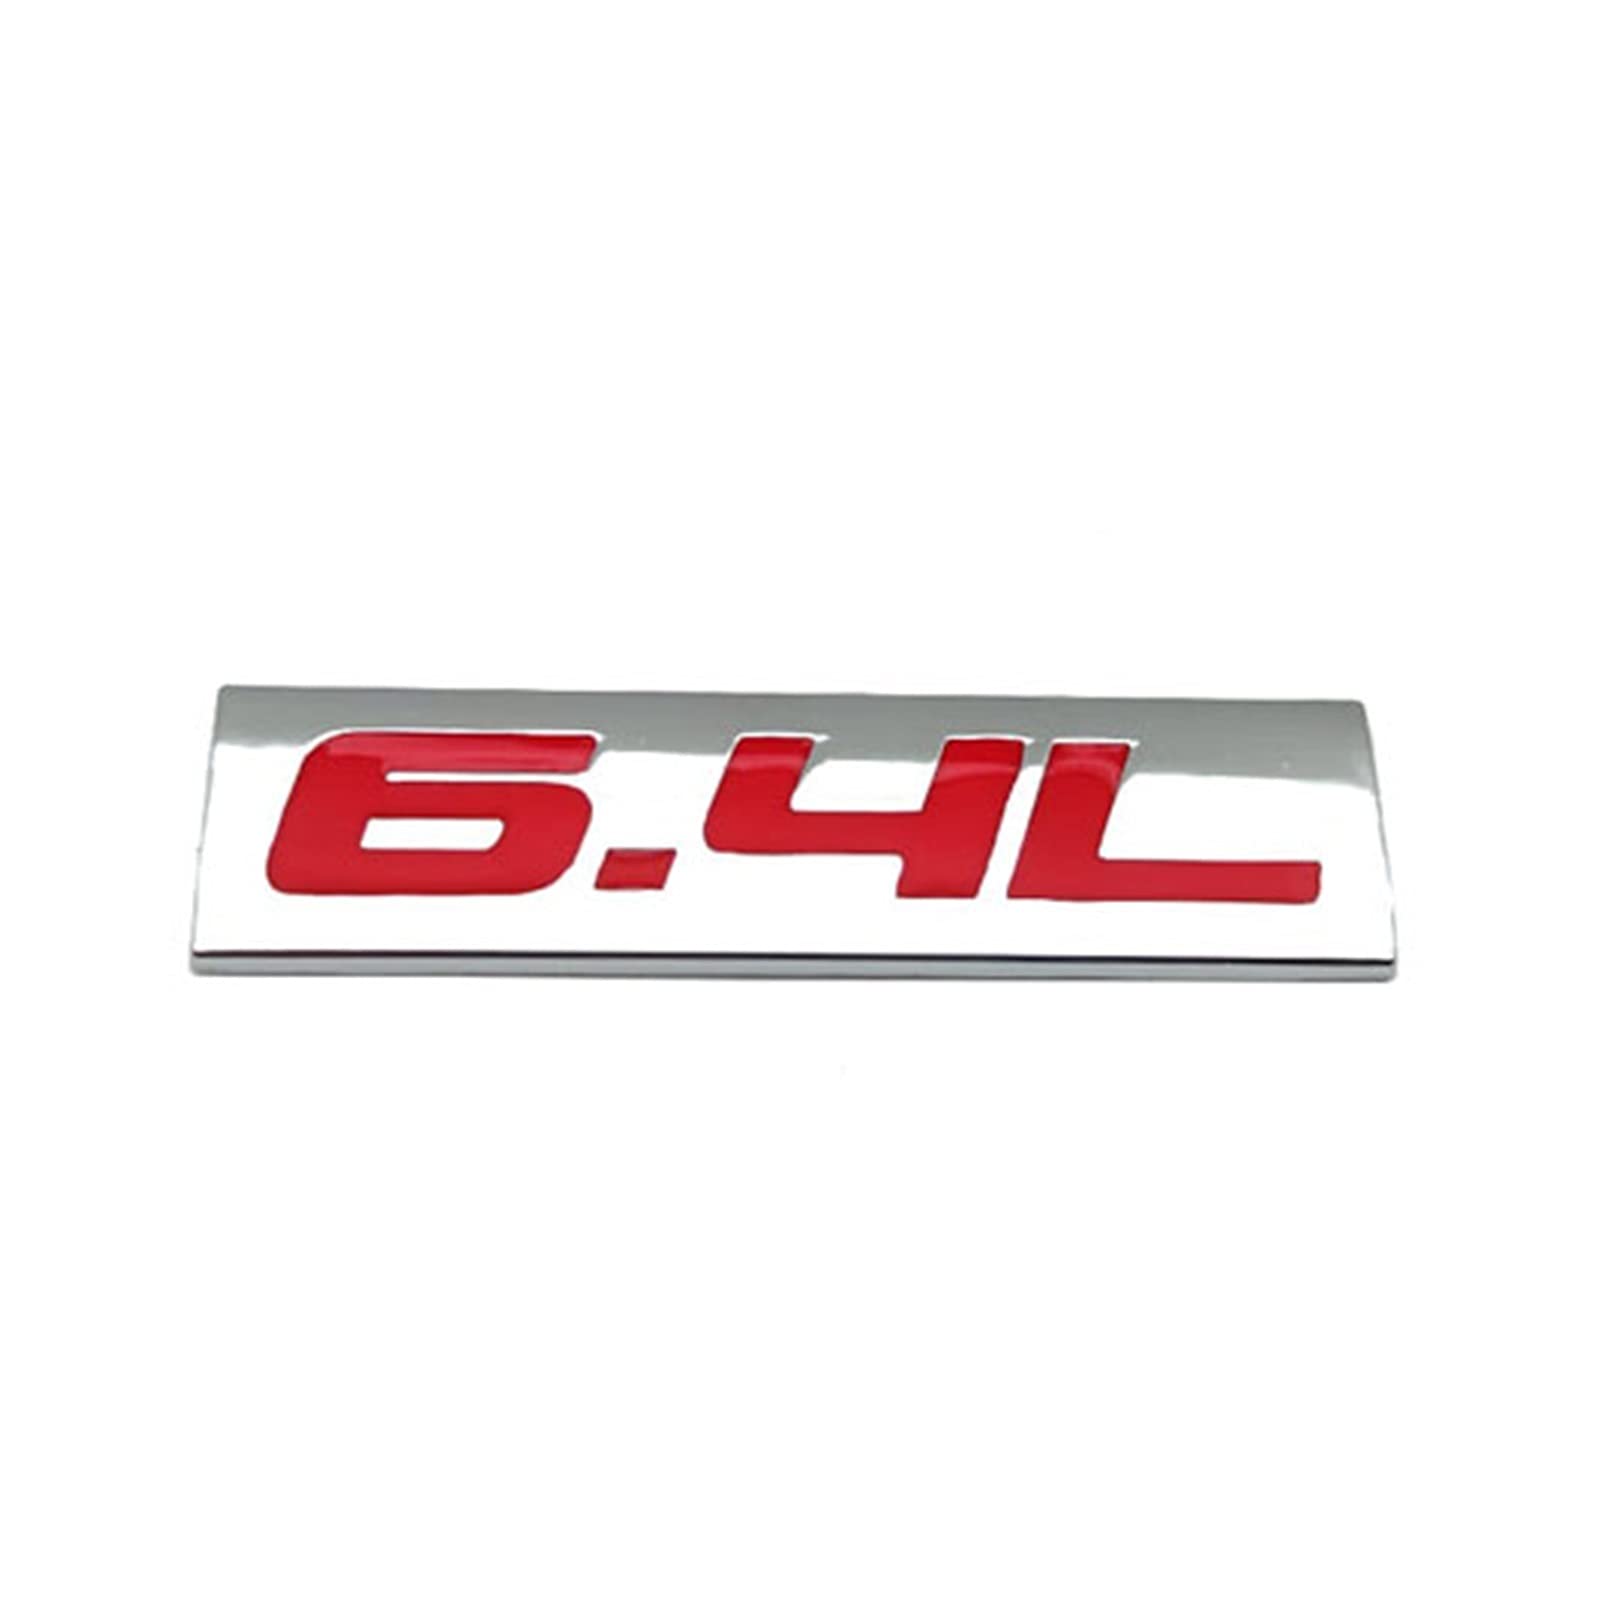 BREAUX Metallauto Styling 6.4L Logo Emblem Flügelseite Abzeichen Kofferraum Aufkleber Aufkleber Zubehör Abzeichen (Color : Silver with R) von BREAUX